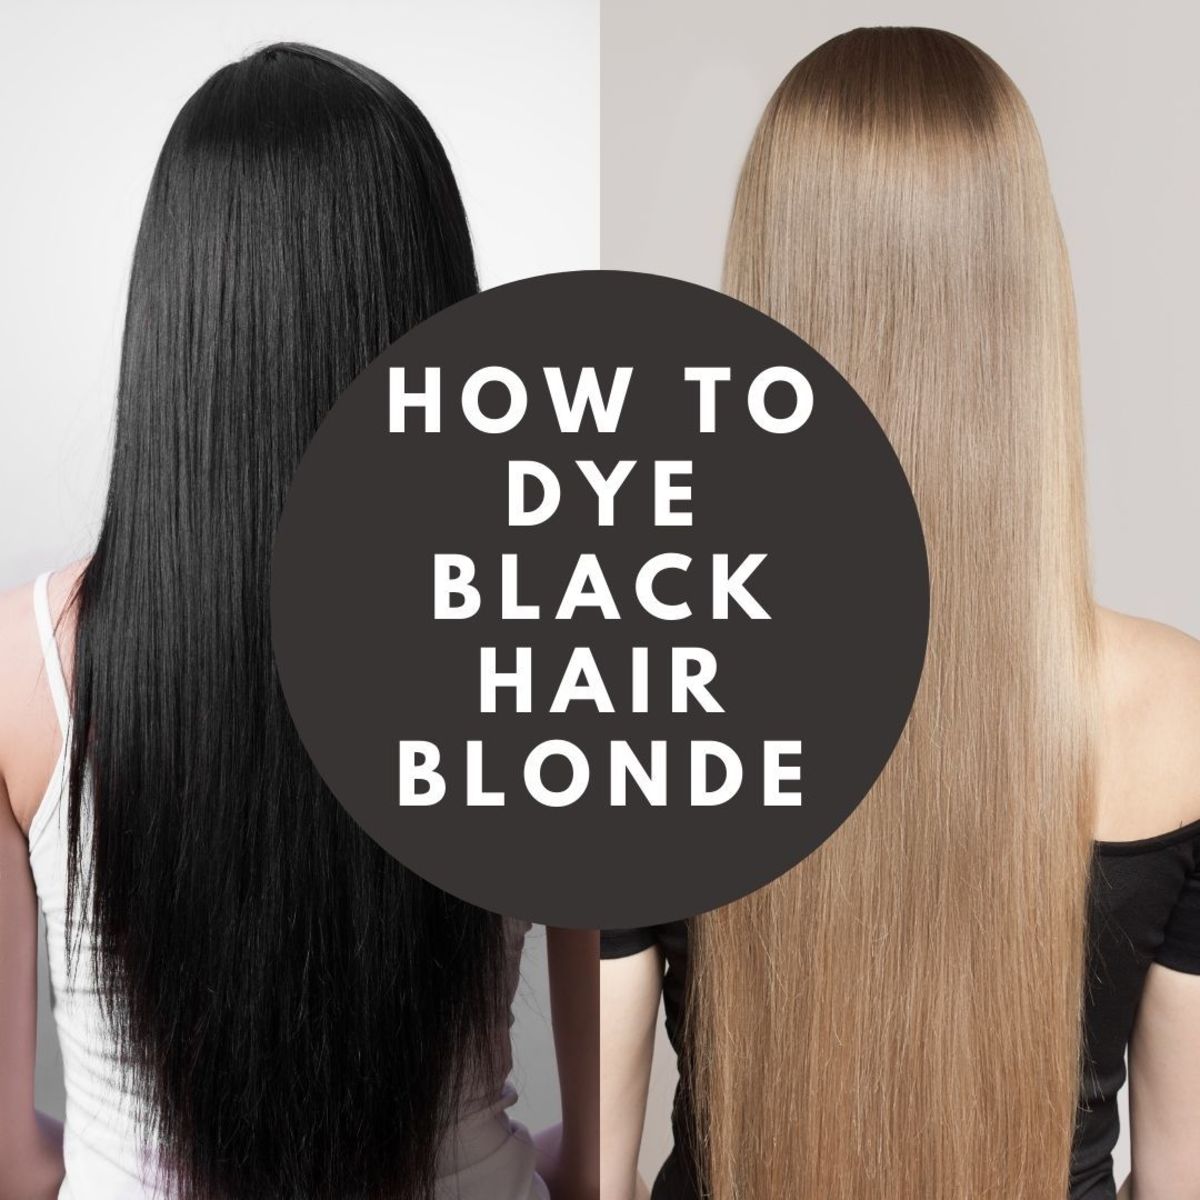 Blacks on blond